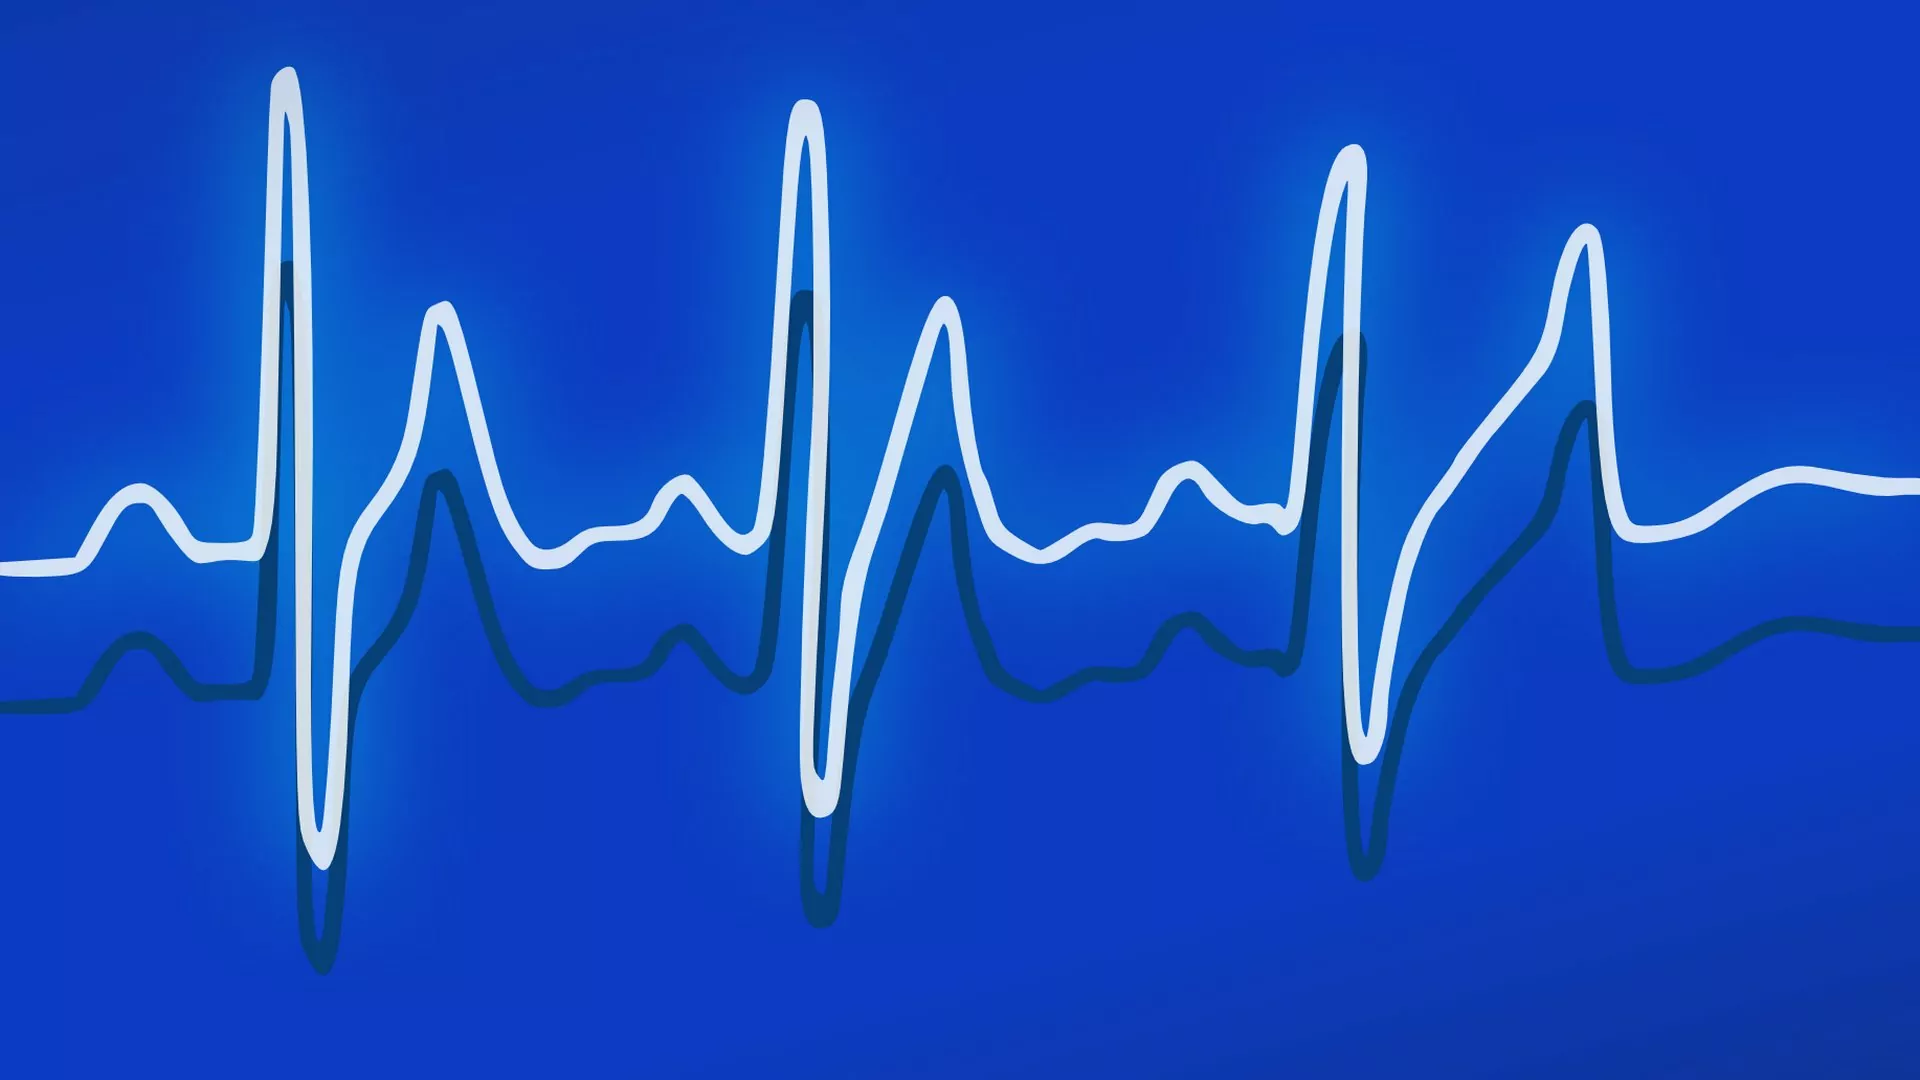 Das Anspannen und Entspannen der Beckenbodenmuskulatur wird häufig ähnlich wie in einem Herzmuskel EKG dargestellt.